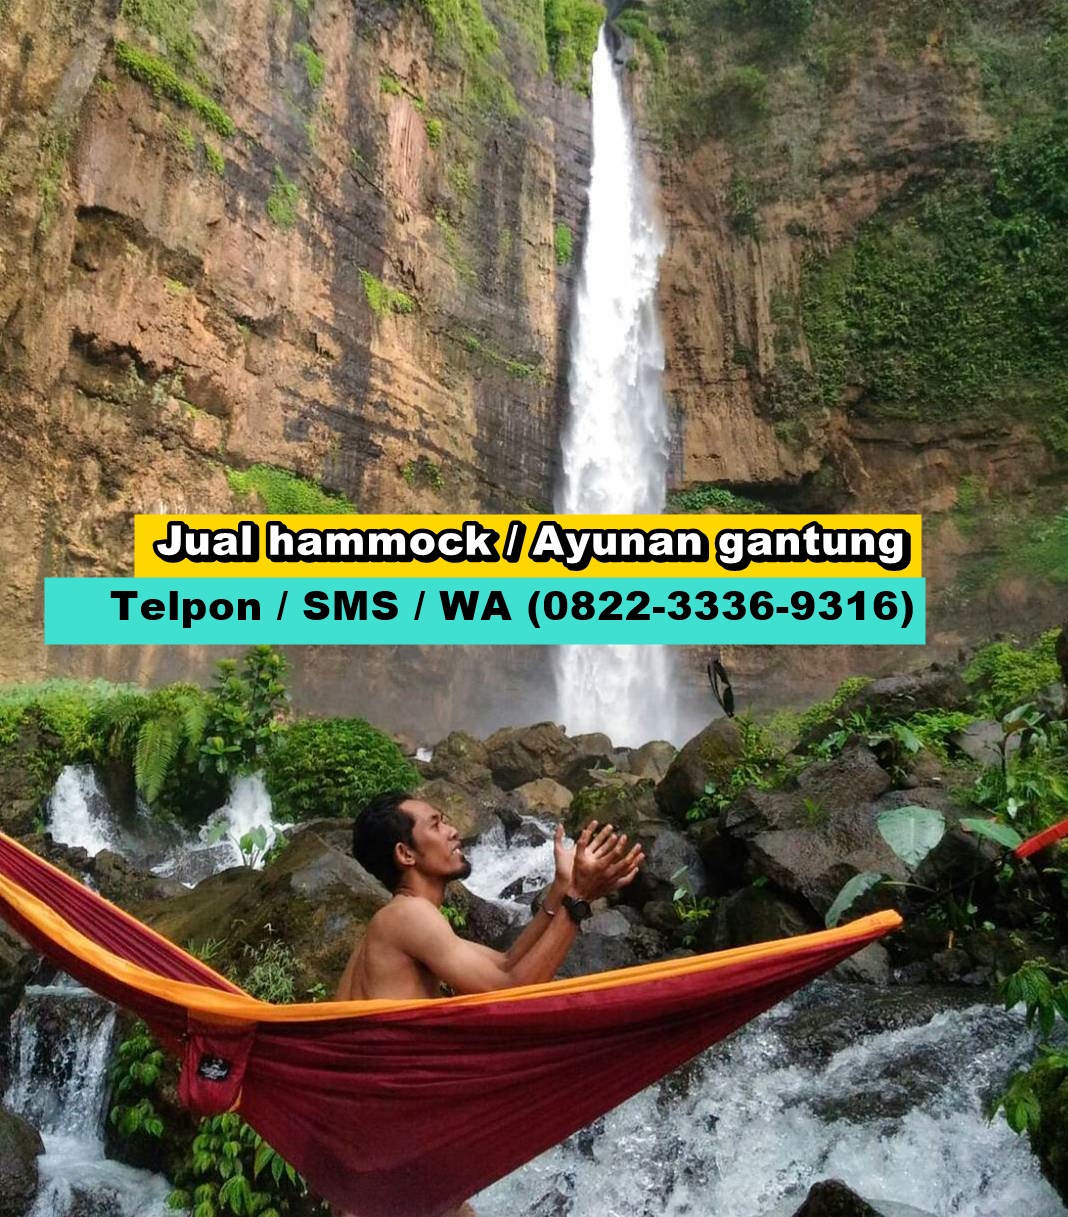 (0822-3336-9316) Jual ayunan murah di Cirebon, Jual hammock murah di Cirebon (43)